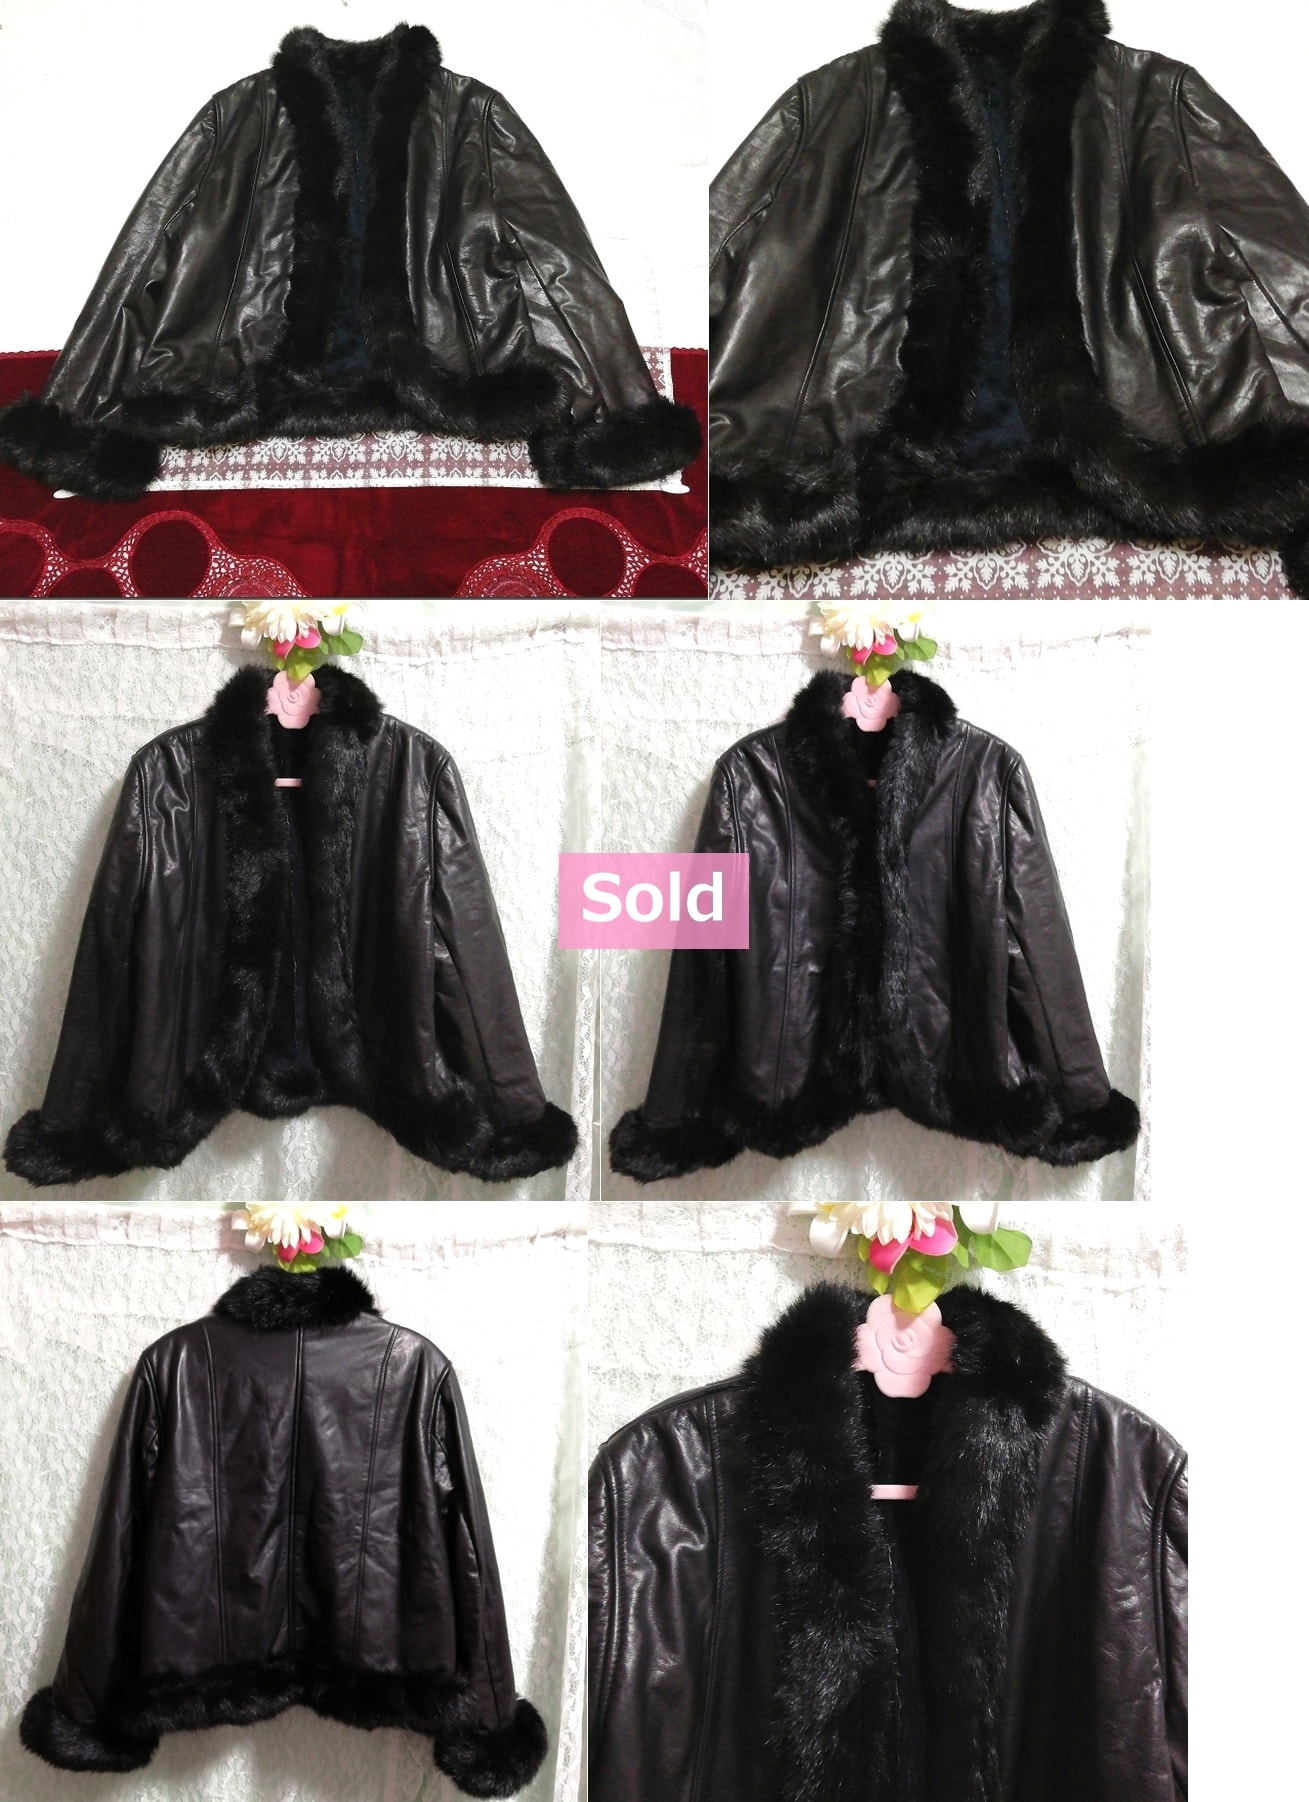 عباءة معطف أسود قصير من جلد البقر صنع في اليابان ، معطف ومعطف عام ومقاس M.